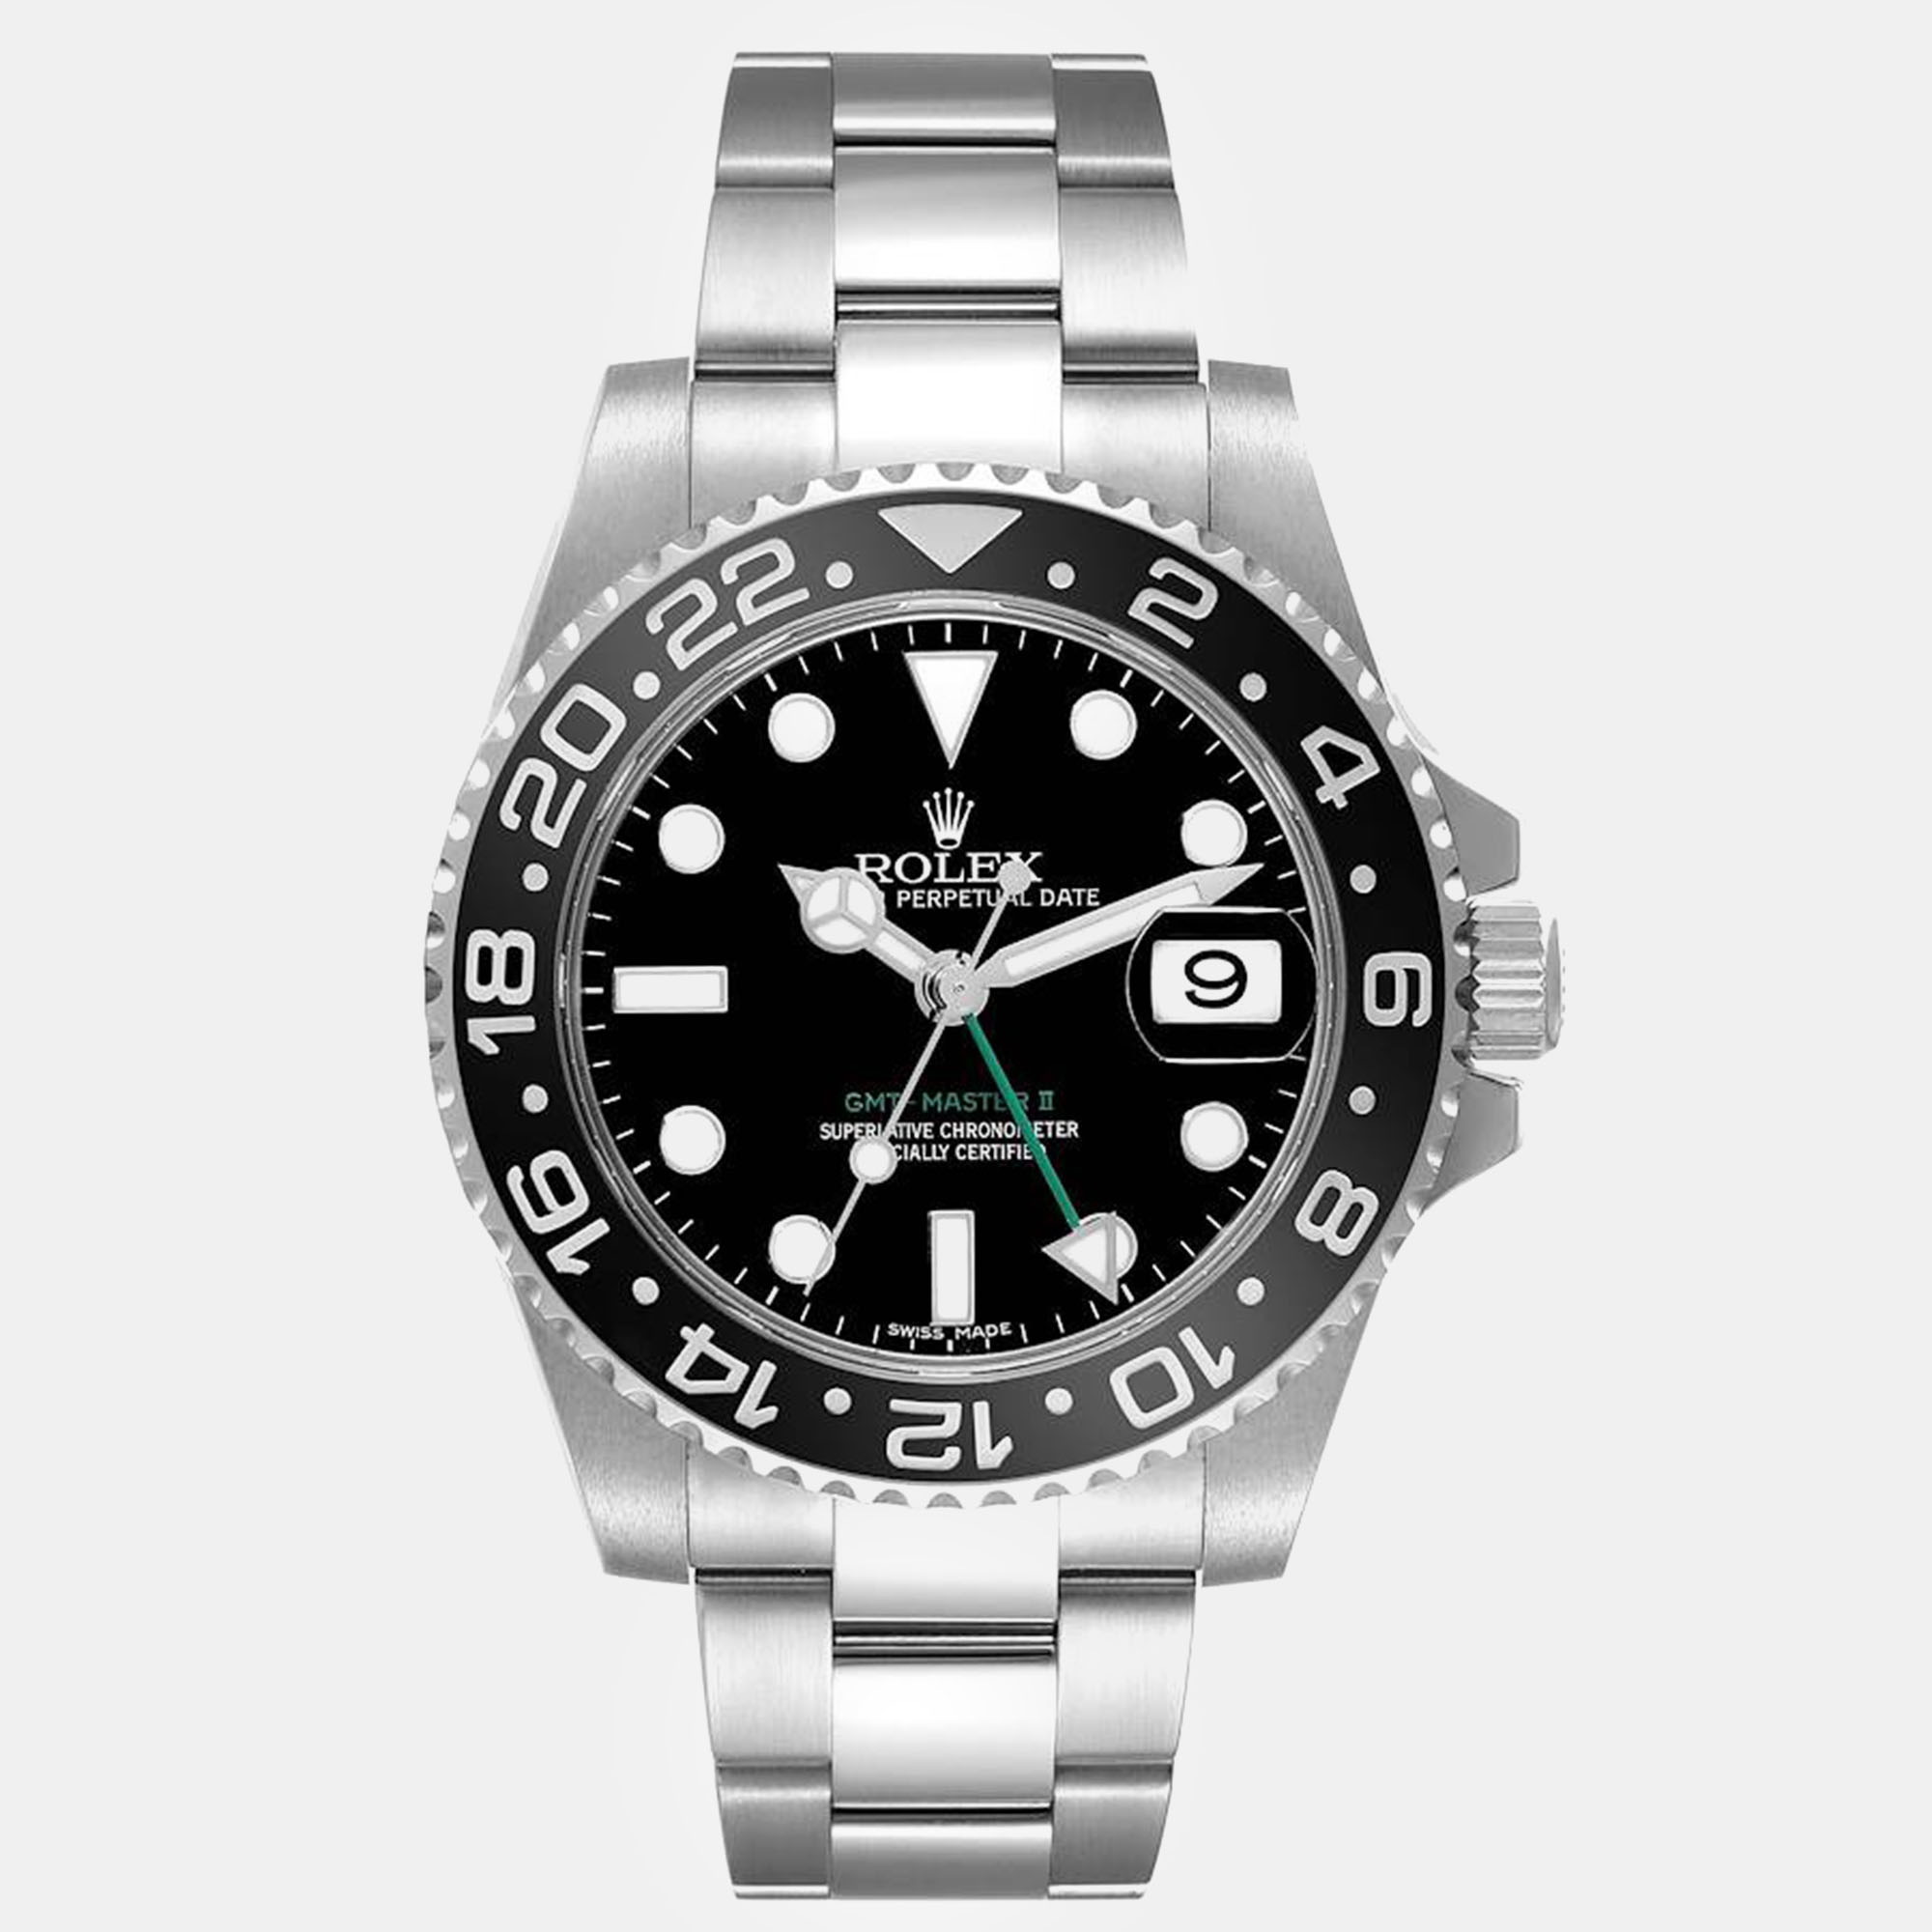 Rolex gmt master ii black dial green hand steel men's watch 40.0 mm